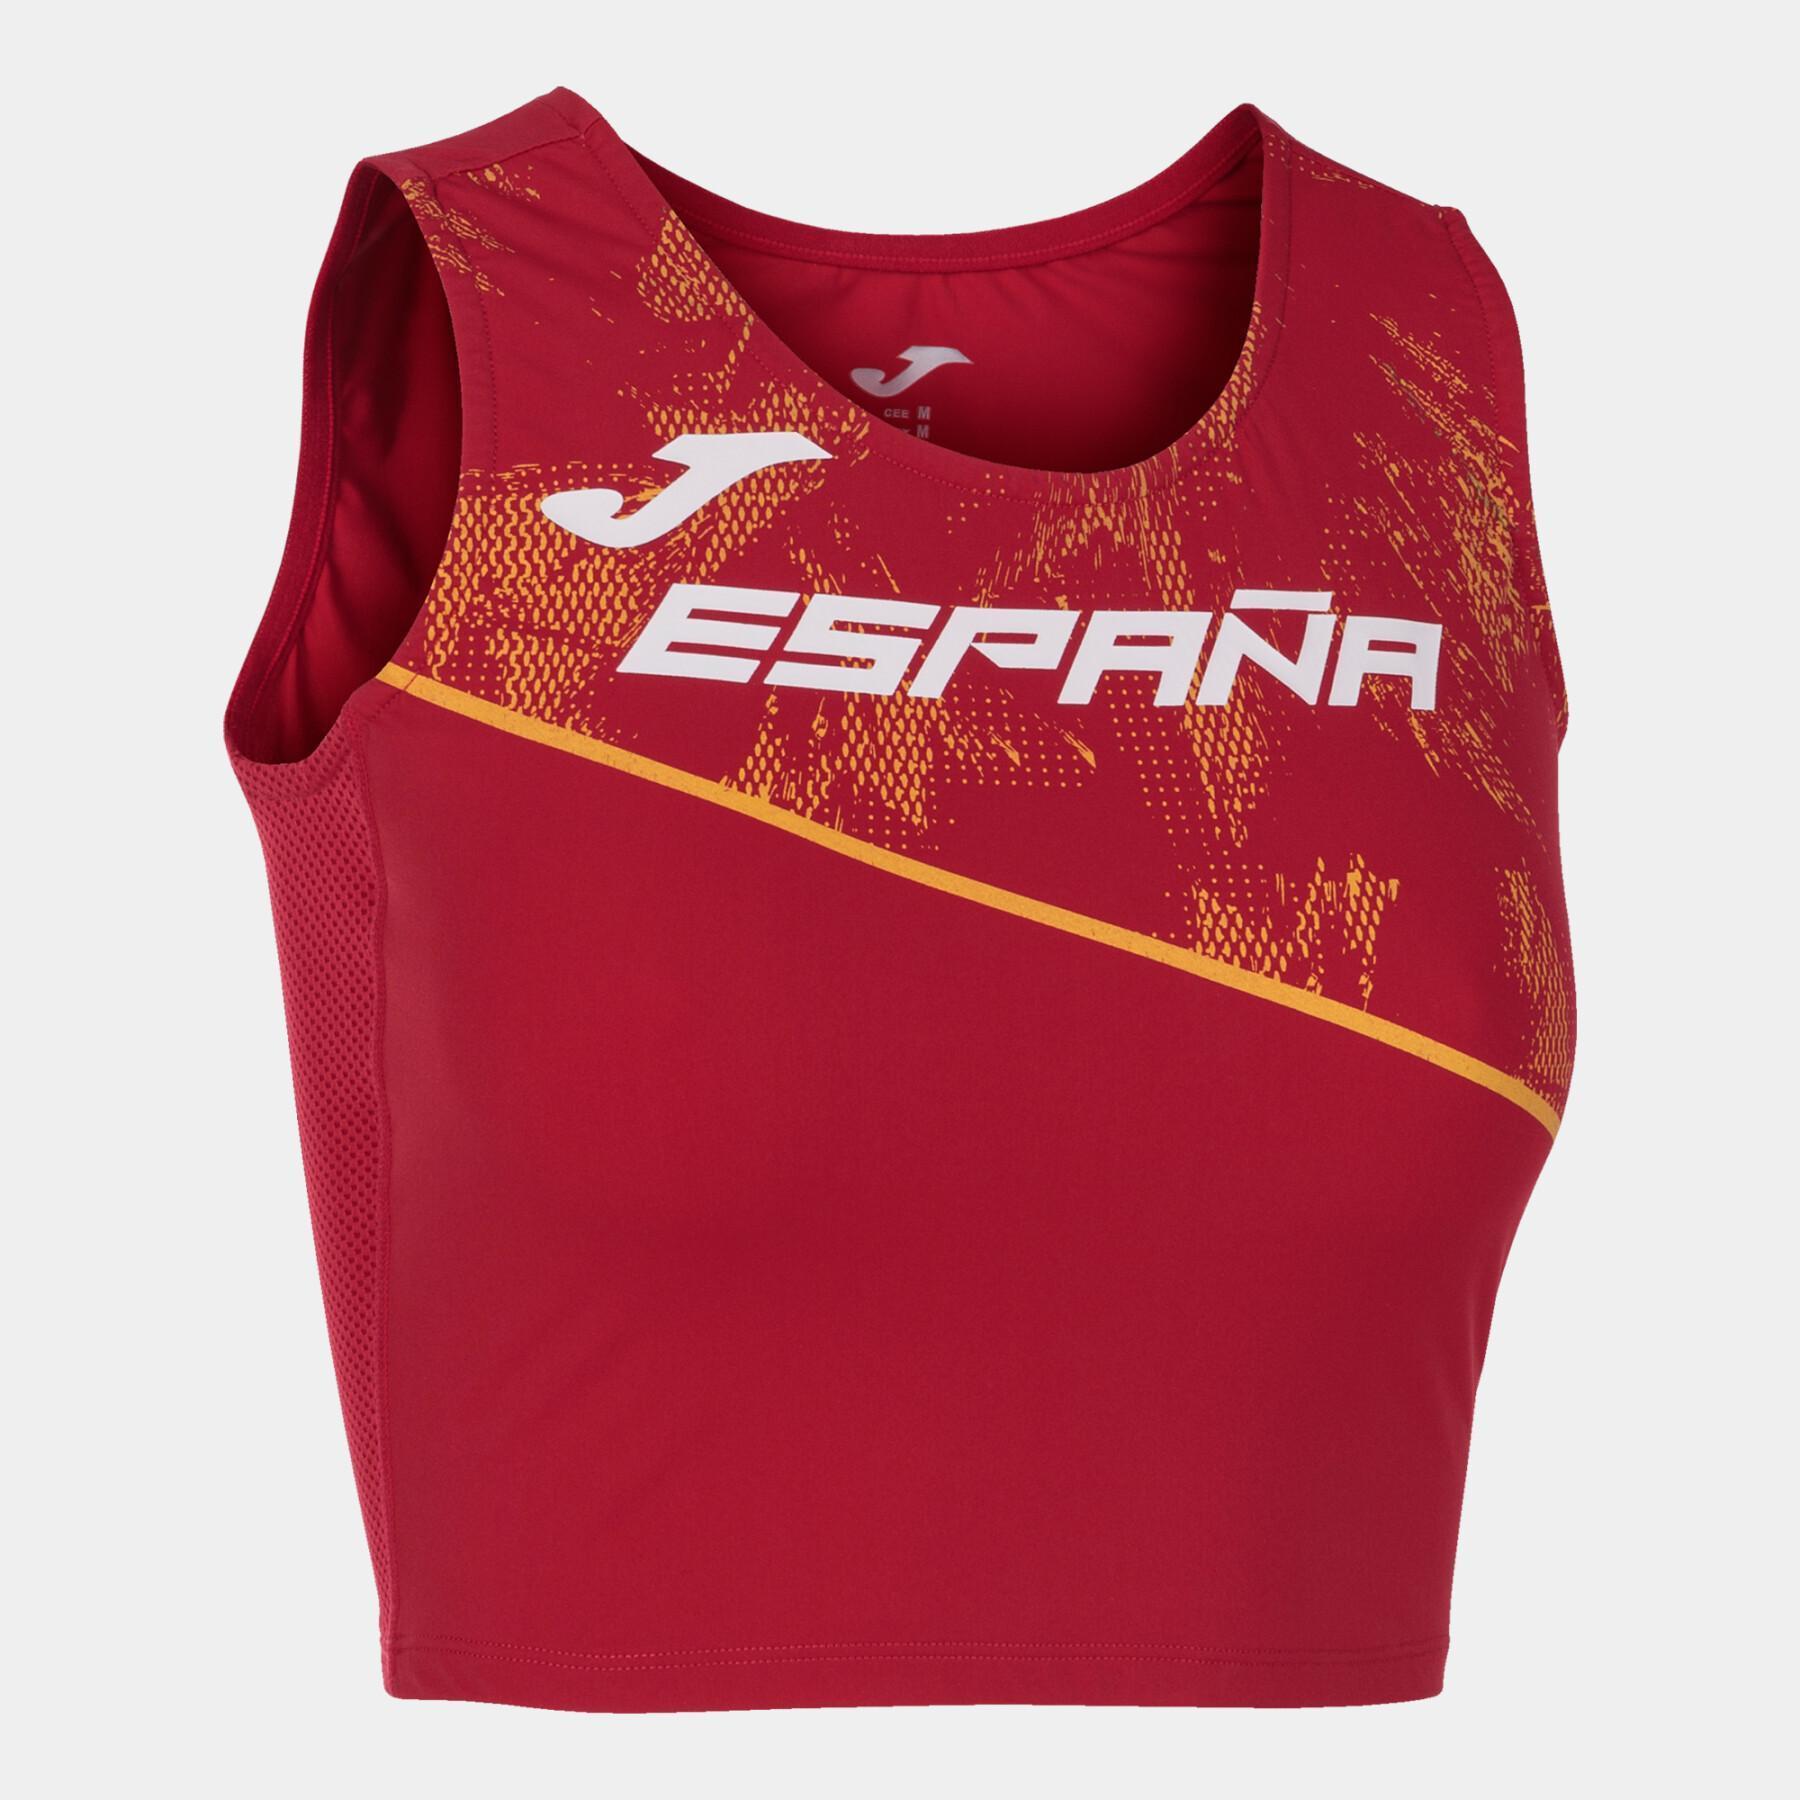 Camiseta de tirantes para mujer Espagne